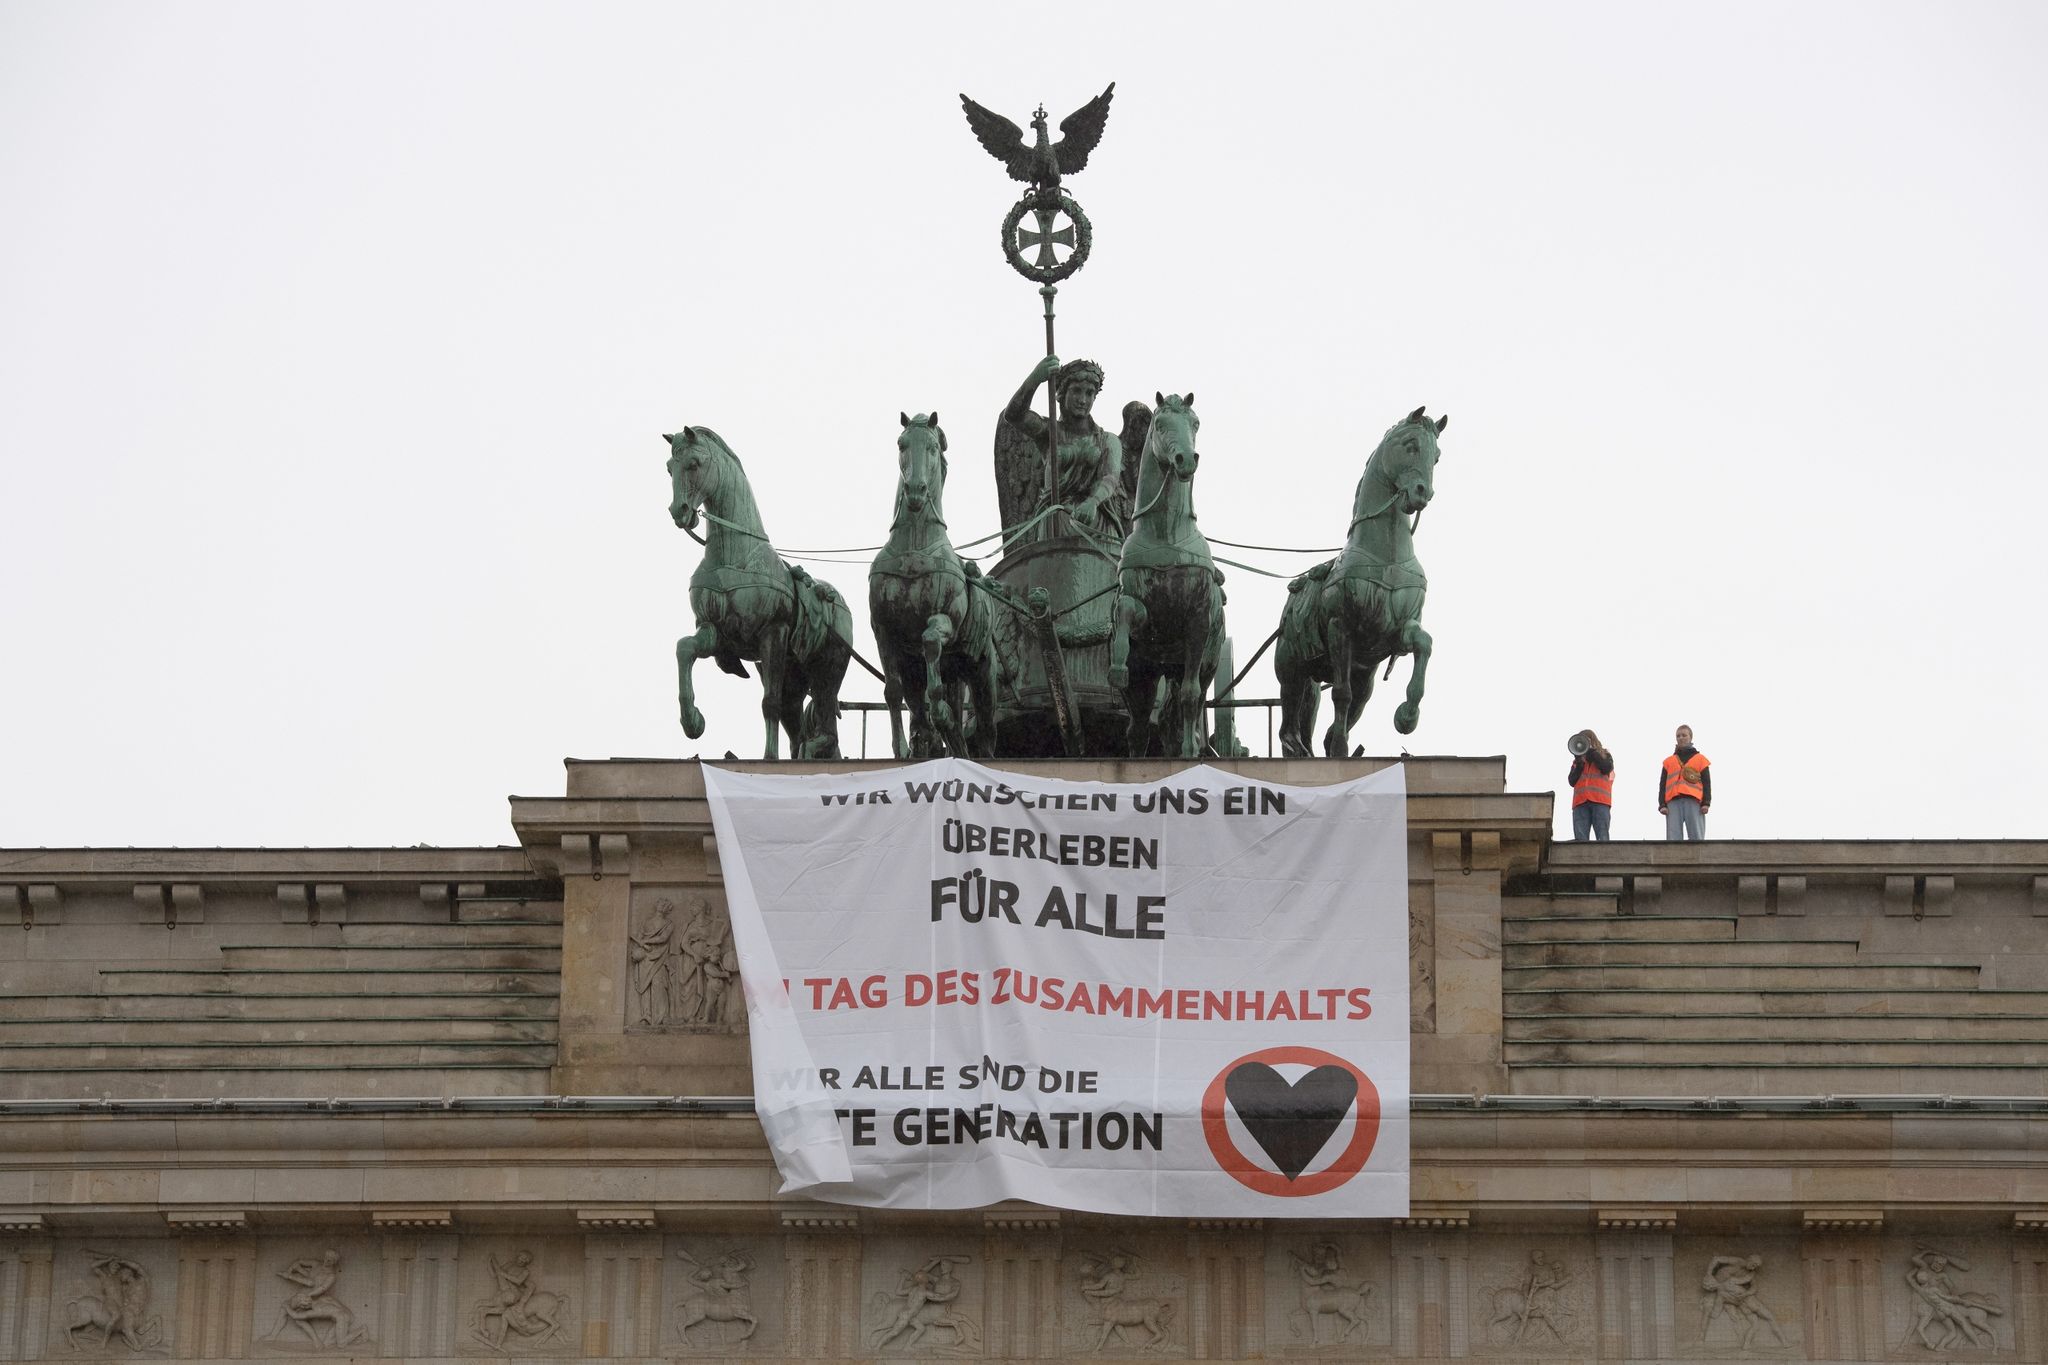 Aktivisten der Gruppe "Letzte Generation" haben das Brandenburger Tor besetzt und ein Transparent aufgehangen.